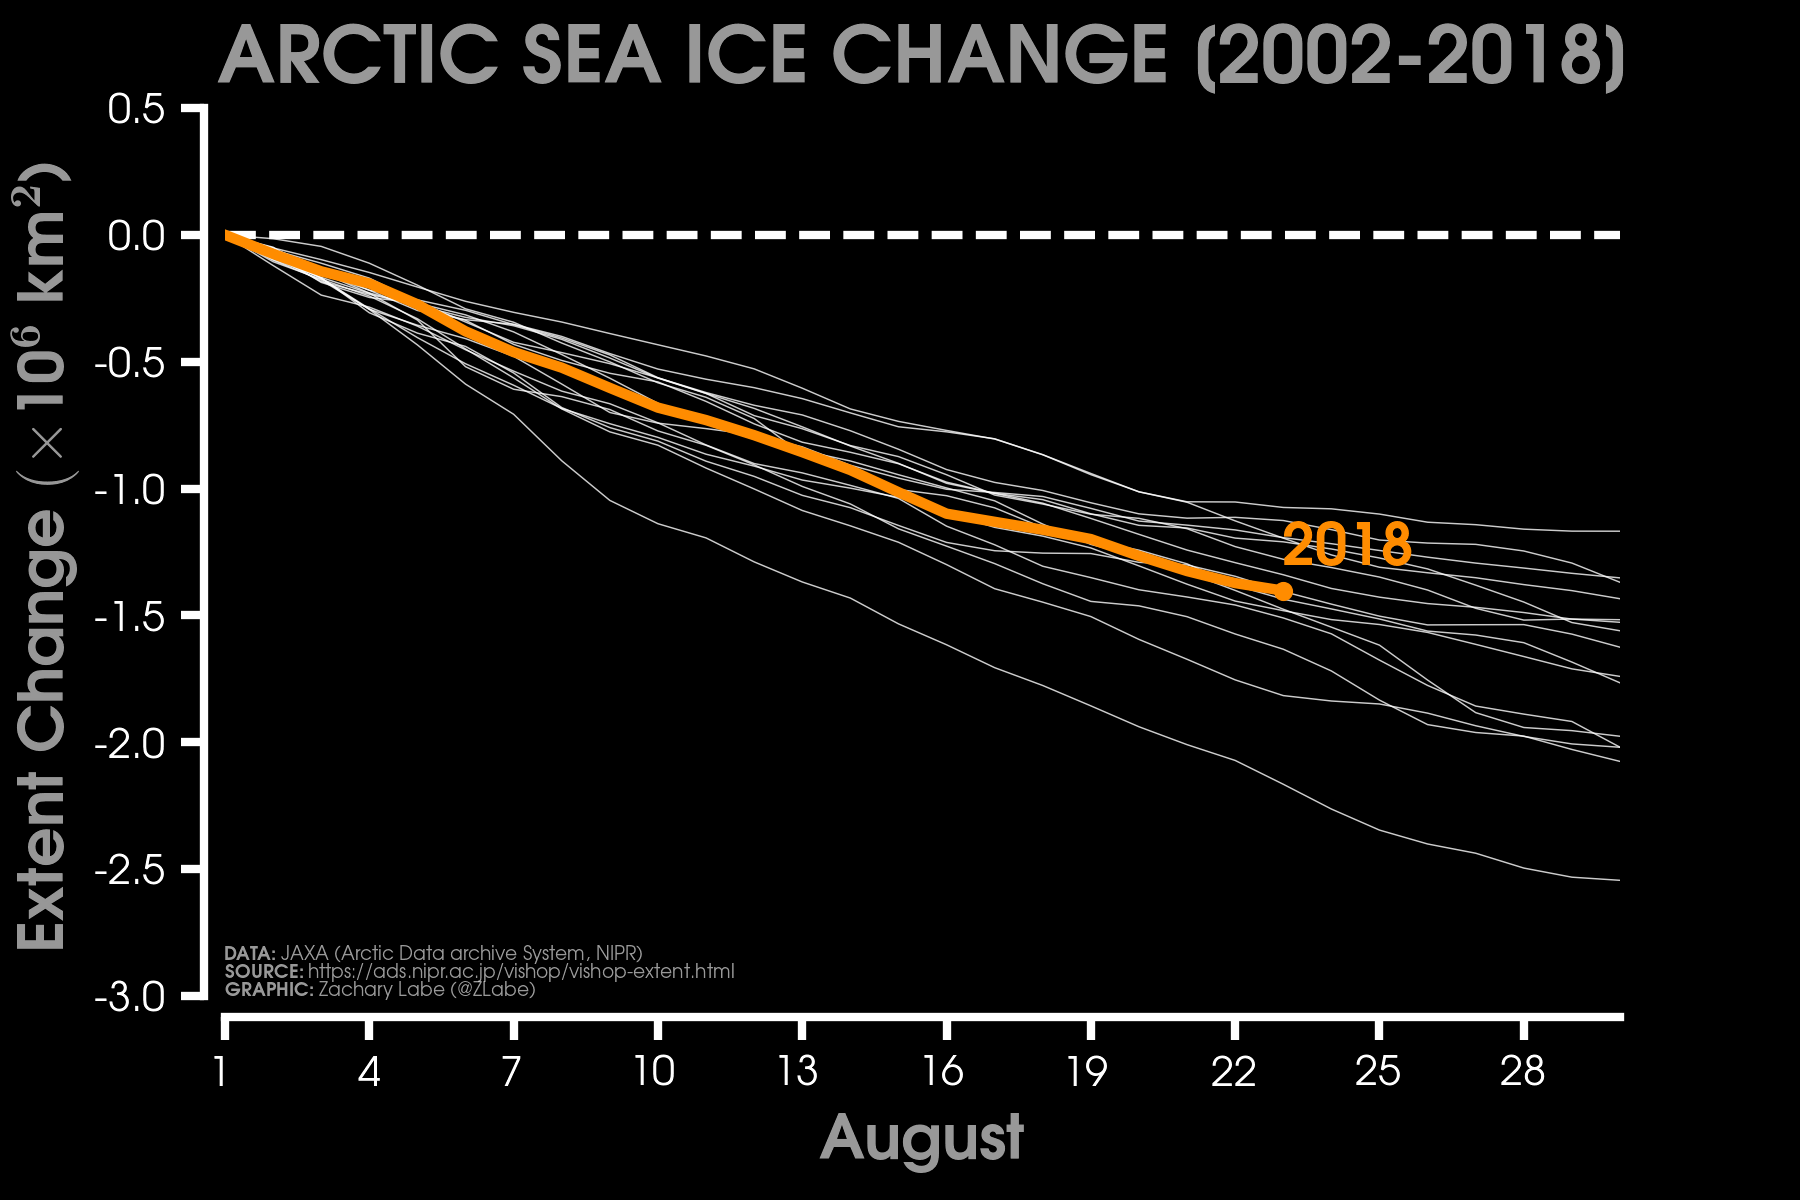 La banquisa ártica alcanzará en 2018 un mínimo superior a los últimos años